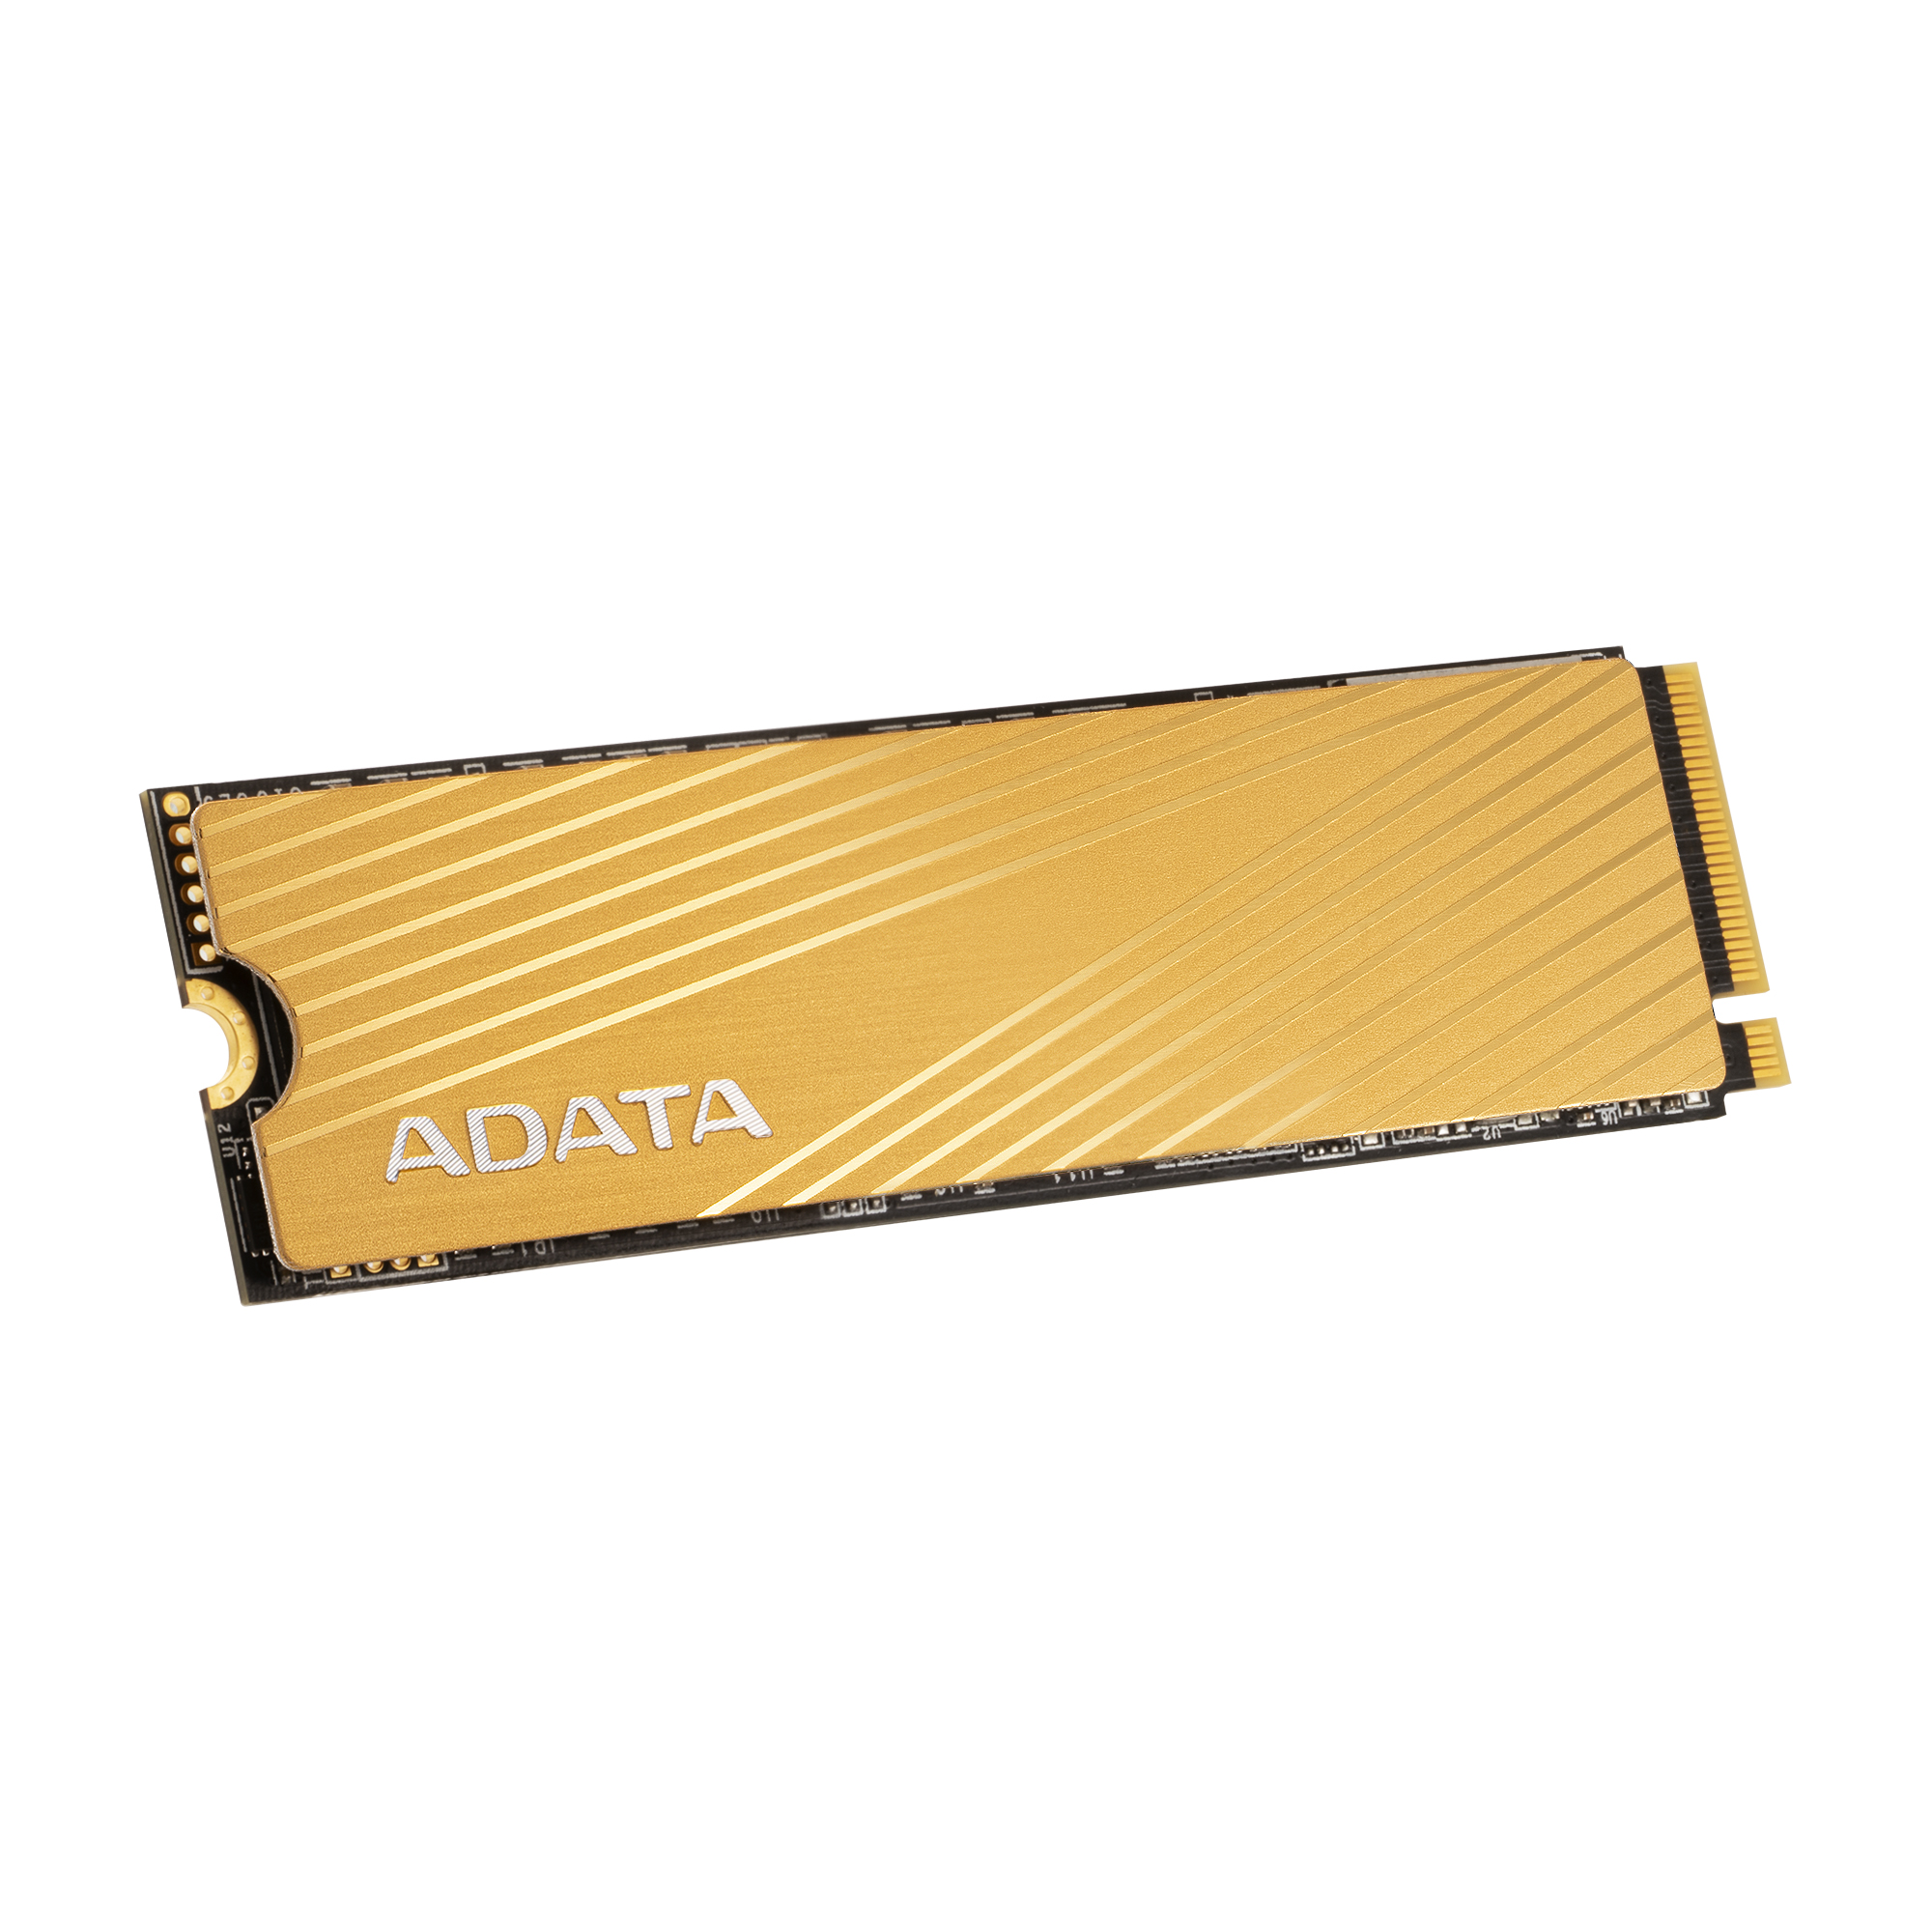 ADATA Unidad de Estado Sólido SSD FALCON, 512GB 3D NAND, PCIe Gen3x4 M.2 2280 3100 MB/s de Lectura y